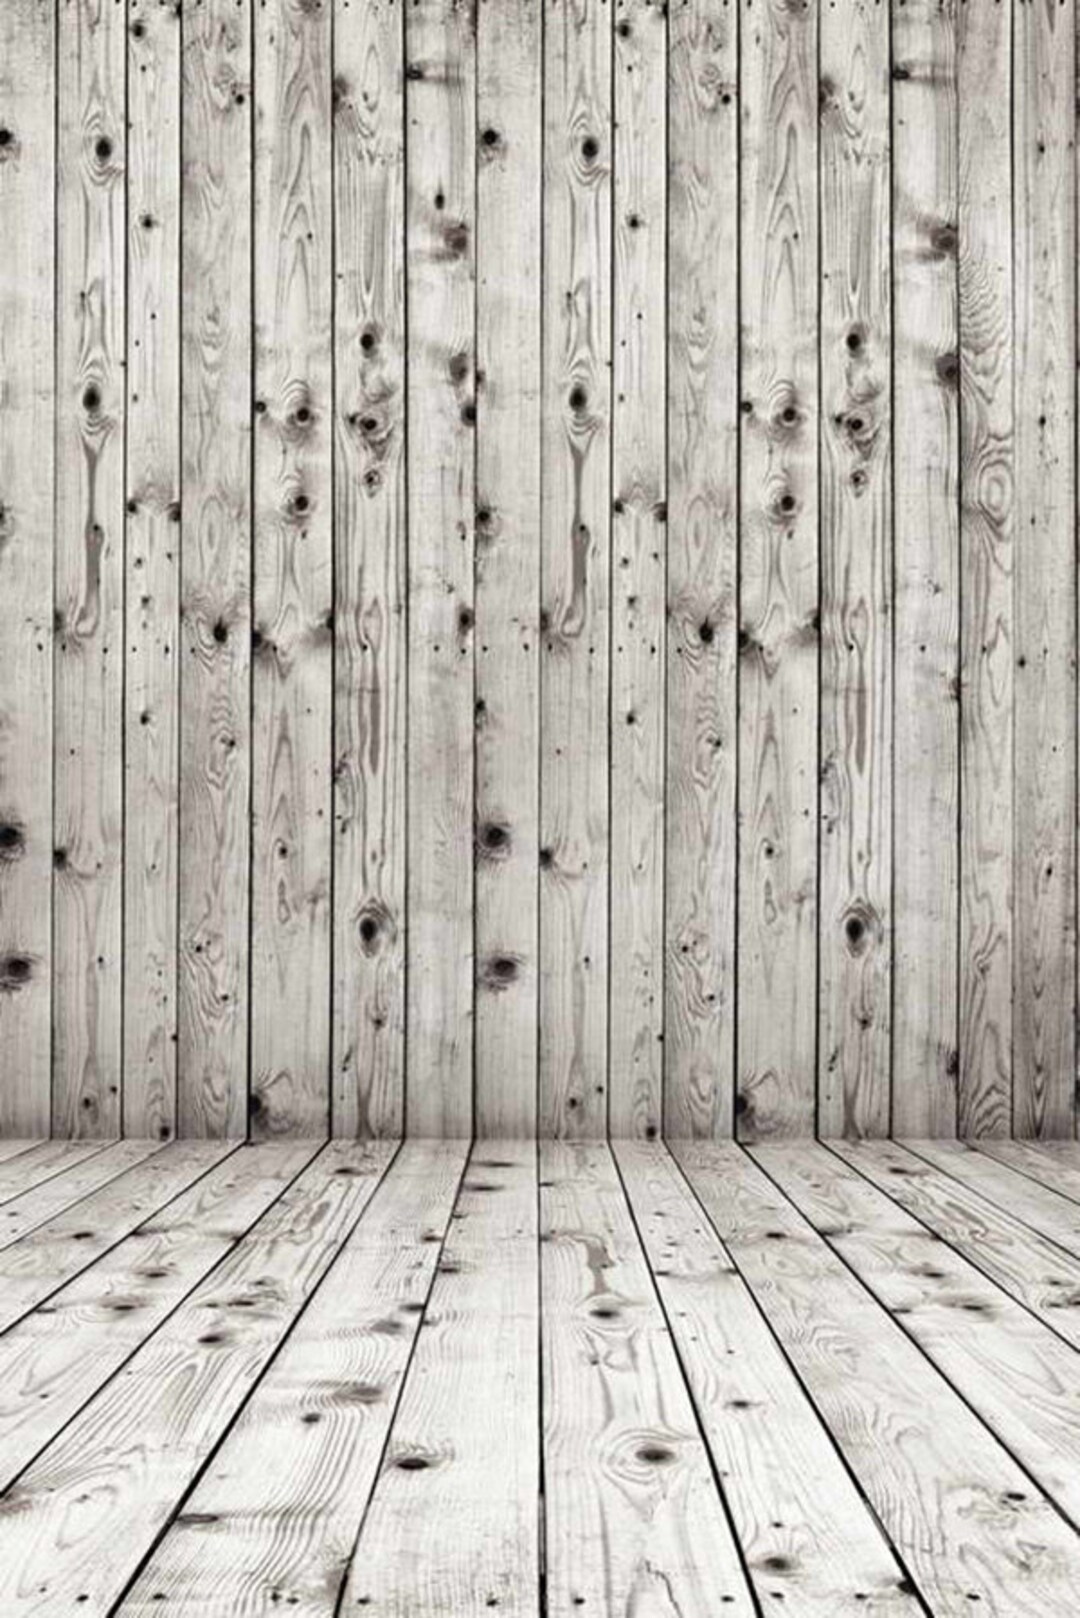 Phòng chụp hình với họa tiết gỗ và nền trắng là lựa chọn lý tưởng cho những bức ảnh chân dung. Màu gỗ sang trọng kết hợp cùng sự chân thật của mặt đất sẽ giúp tạo nên một không gian ấm cúng và bắt mắt cho bức ảnh.